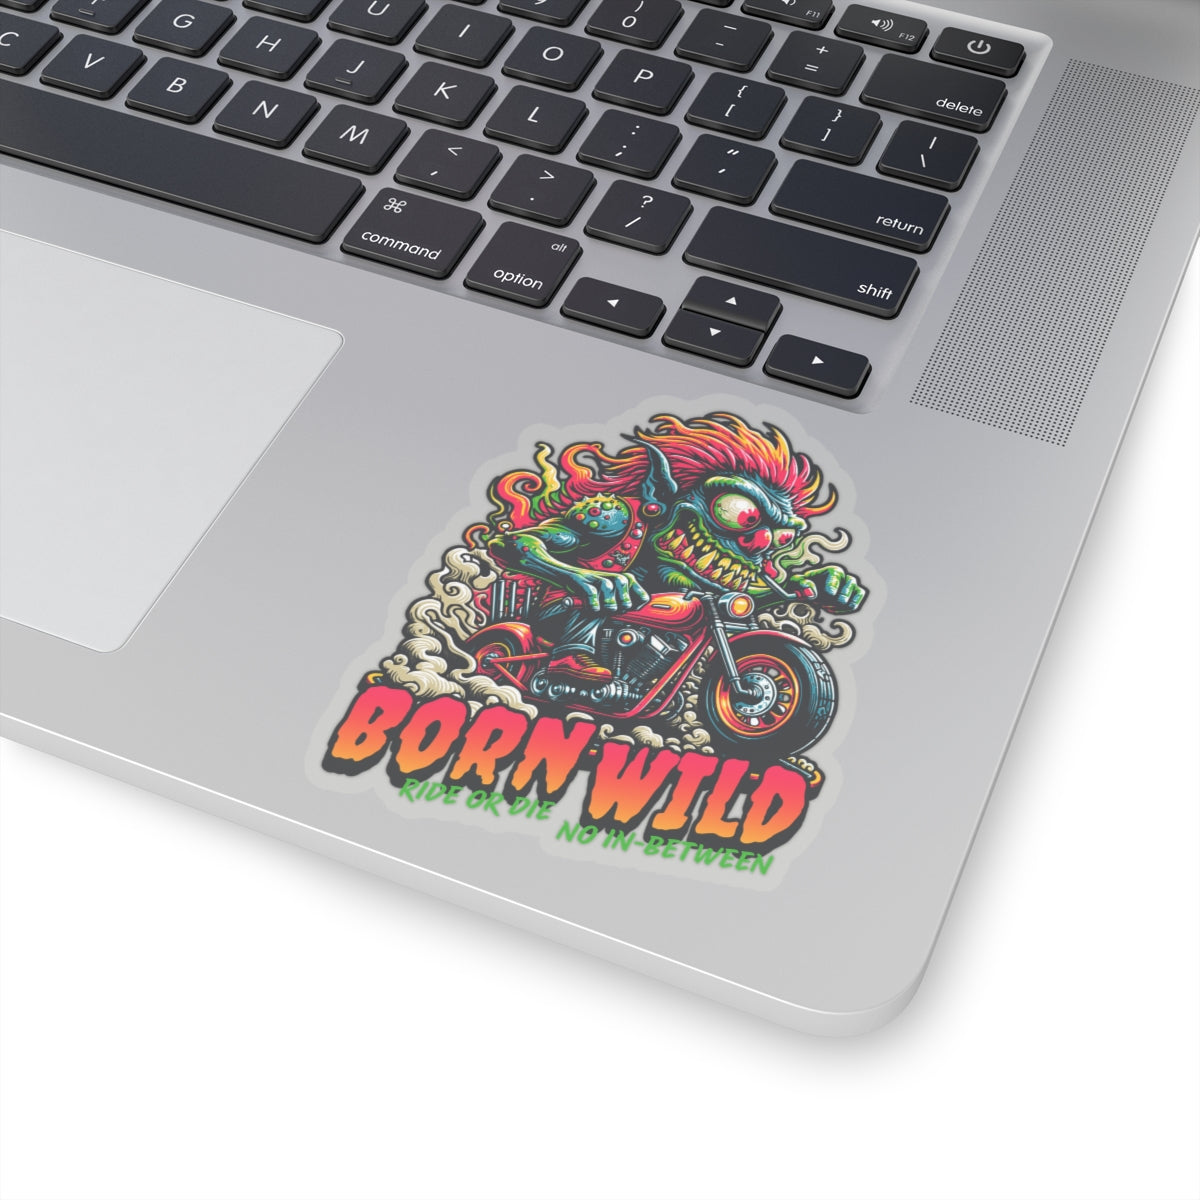 Born Wild Retro Groovy Sticker - Kiss-Cut Sticker